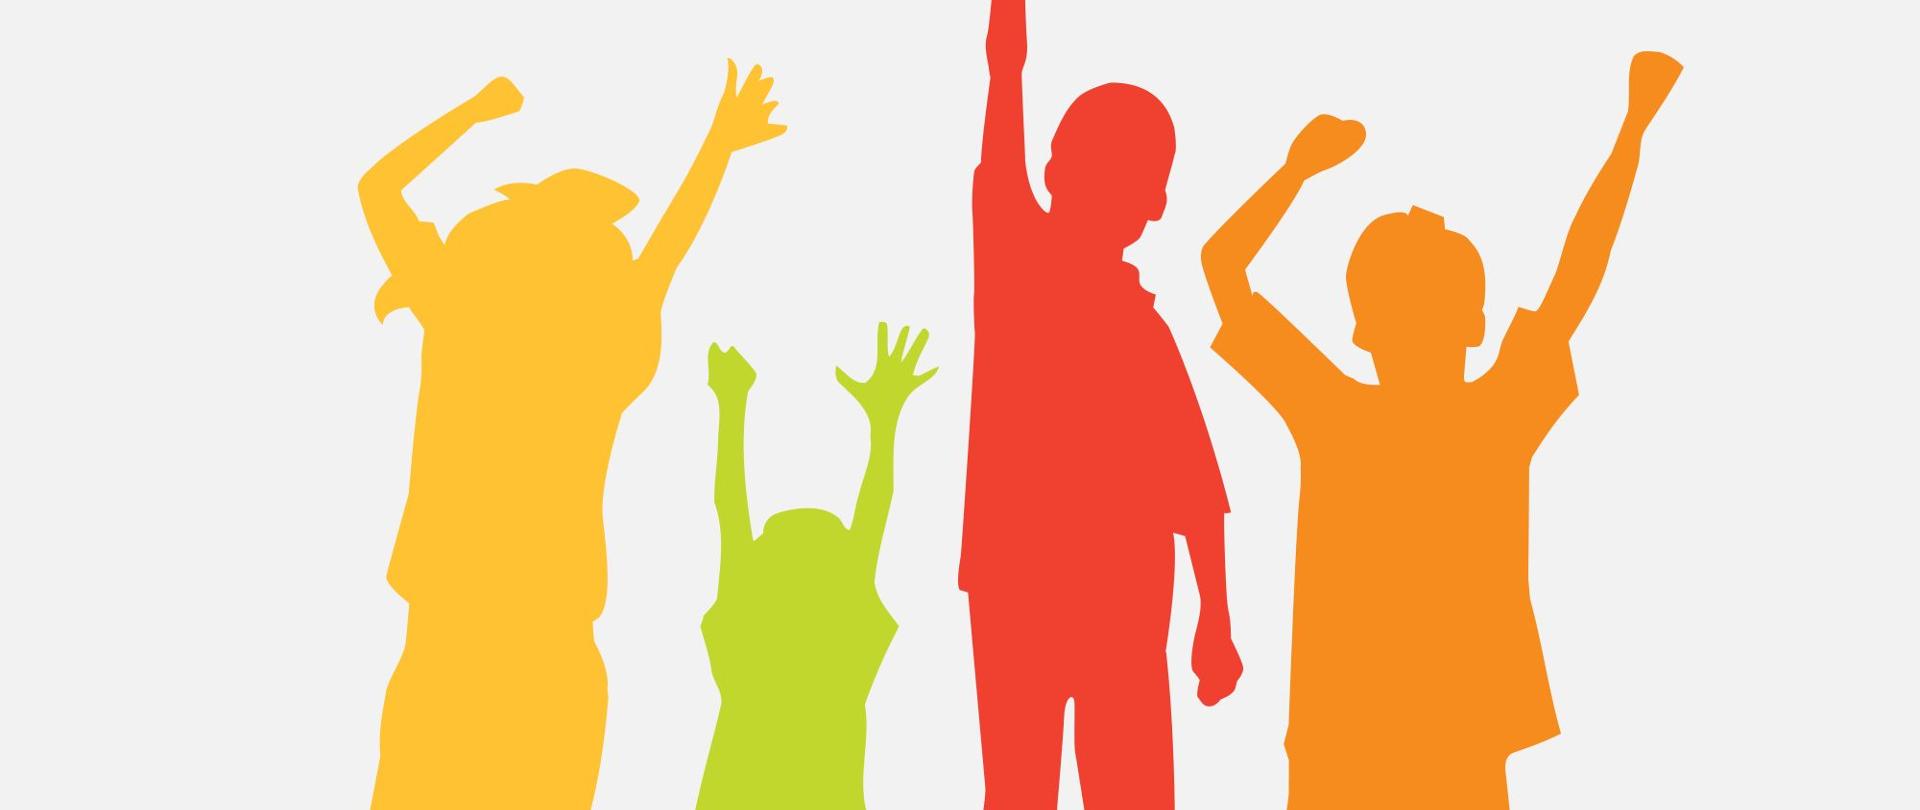 cztery kolorowe postacie dzieci unoszące ręce do góry